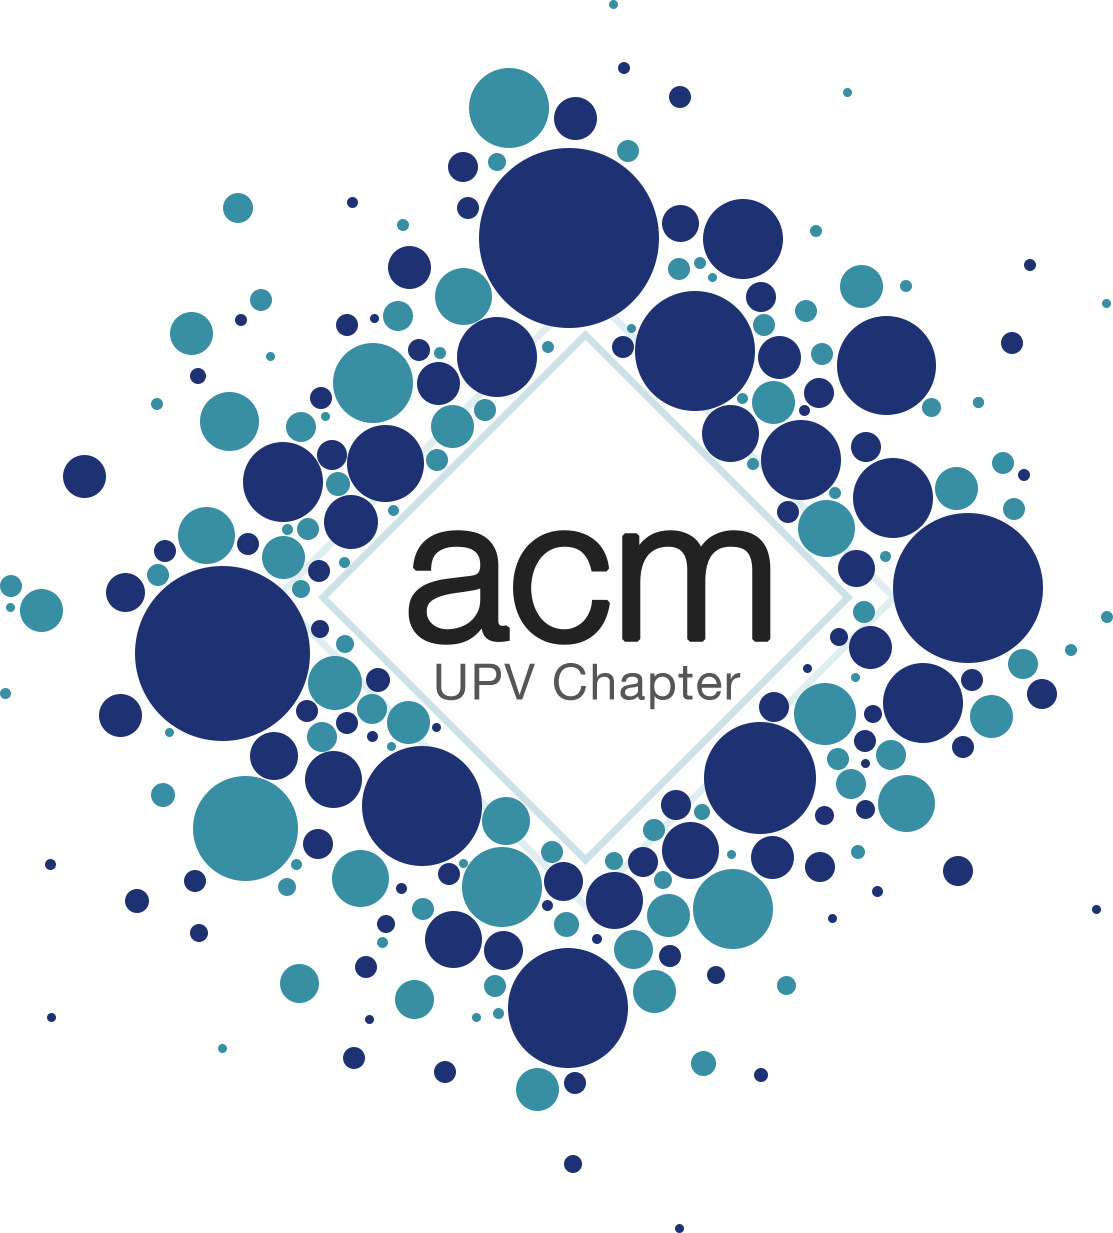 Logo of ACM UPC Chapter